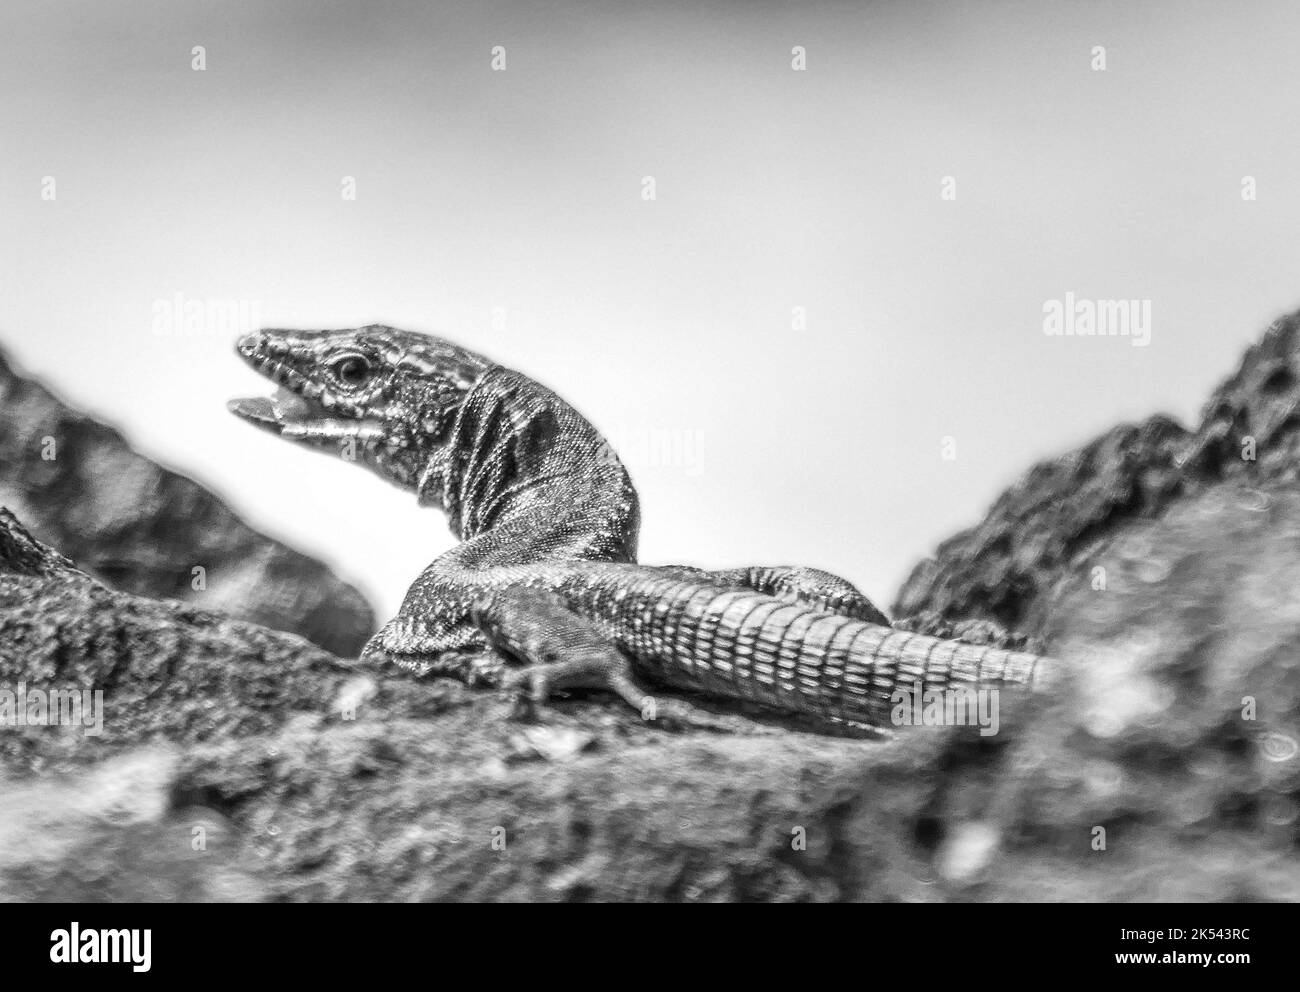 Primer plano de un lagarto sobre una roca volcánica en la isla Graciosa, Azores Foto de stock